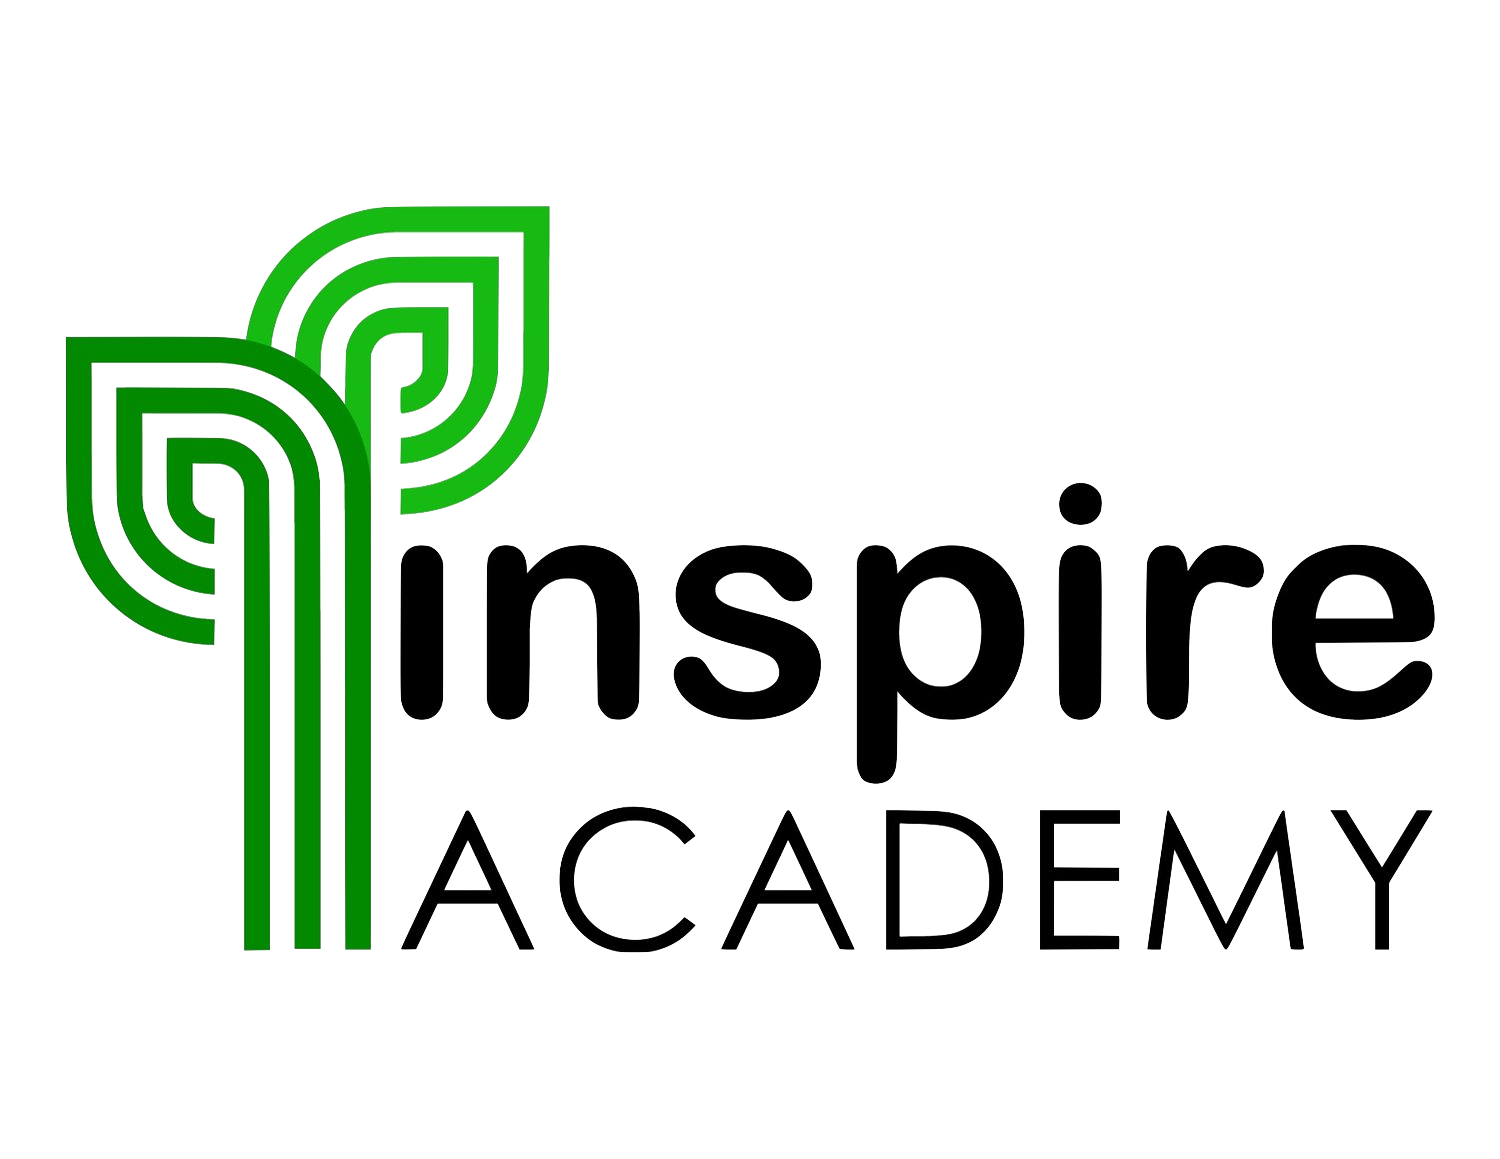 Inspire Academy